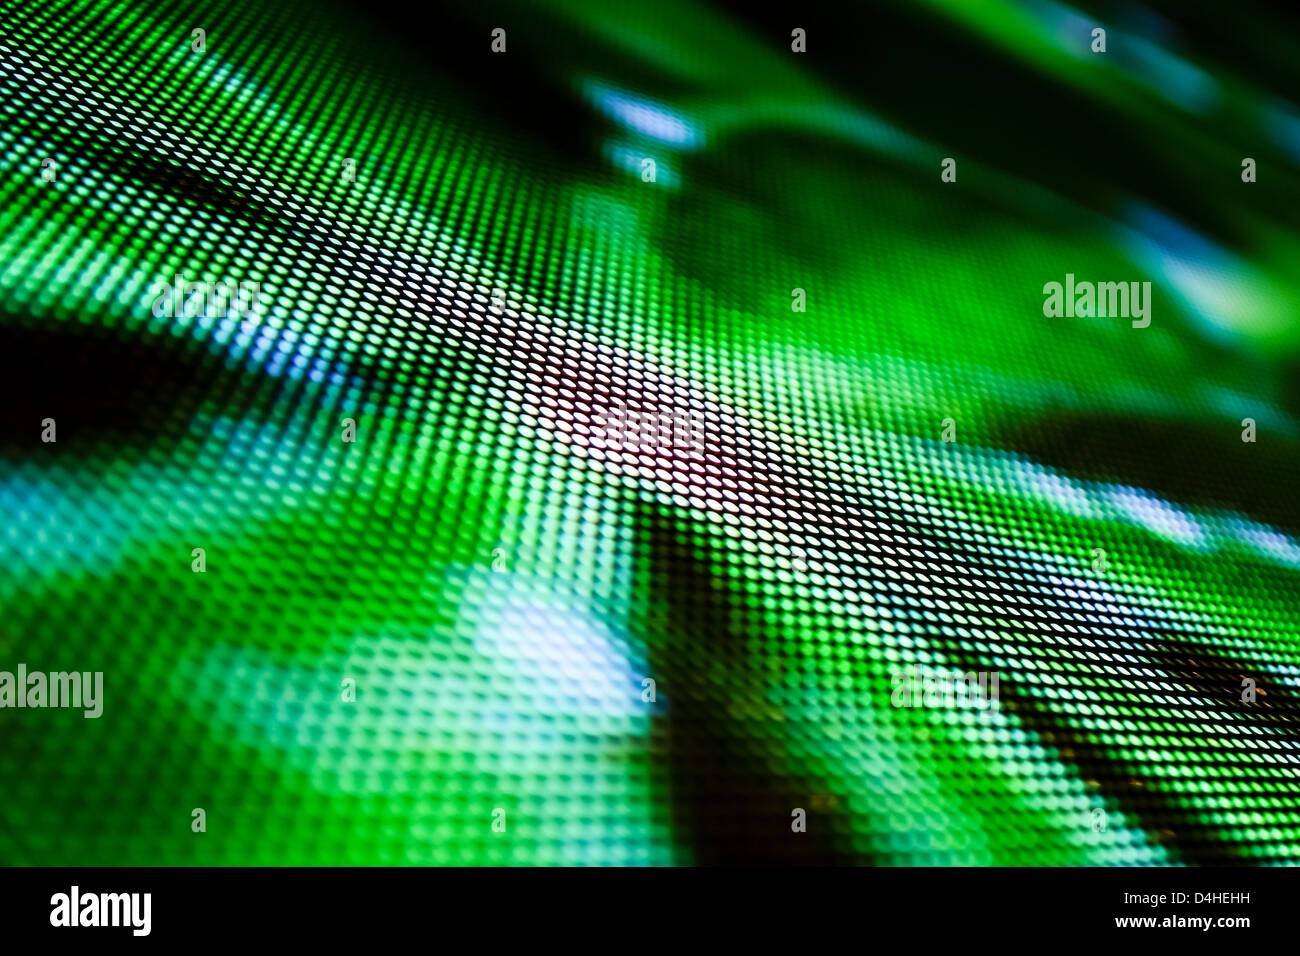 Eine Matrix aus LEDs zeigt ein Computerbild als eine einzelne LED-Bildschirm. Geringe Schärfentiefe für einen verschwommenen Effekt. Stockfoto